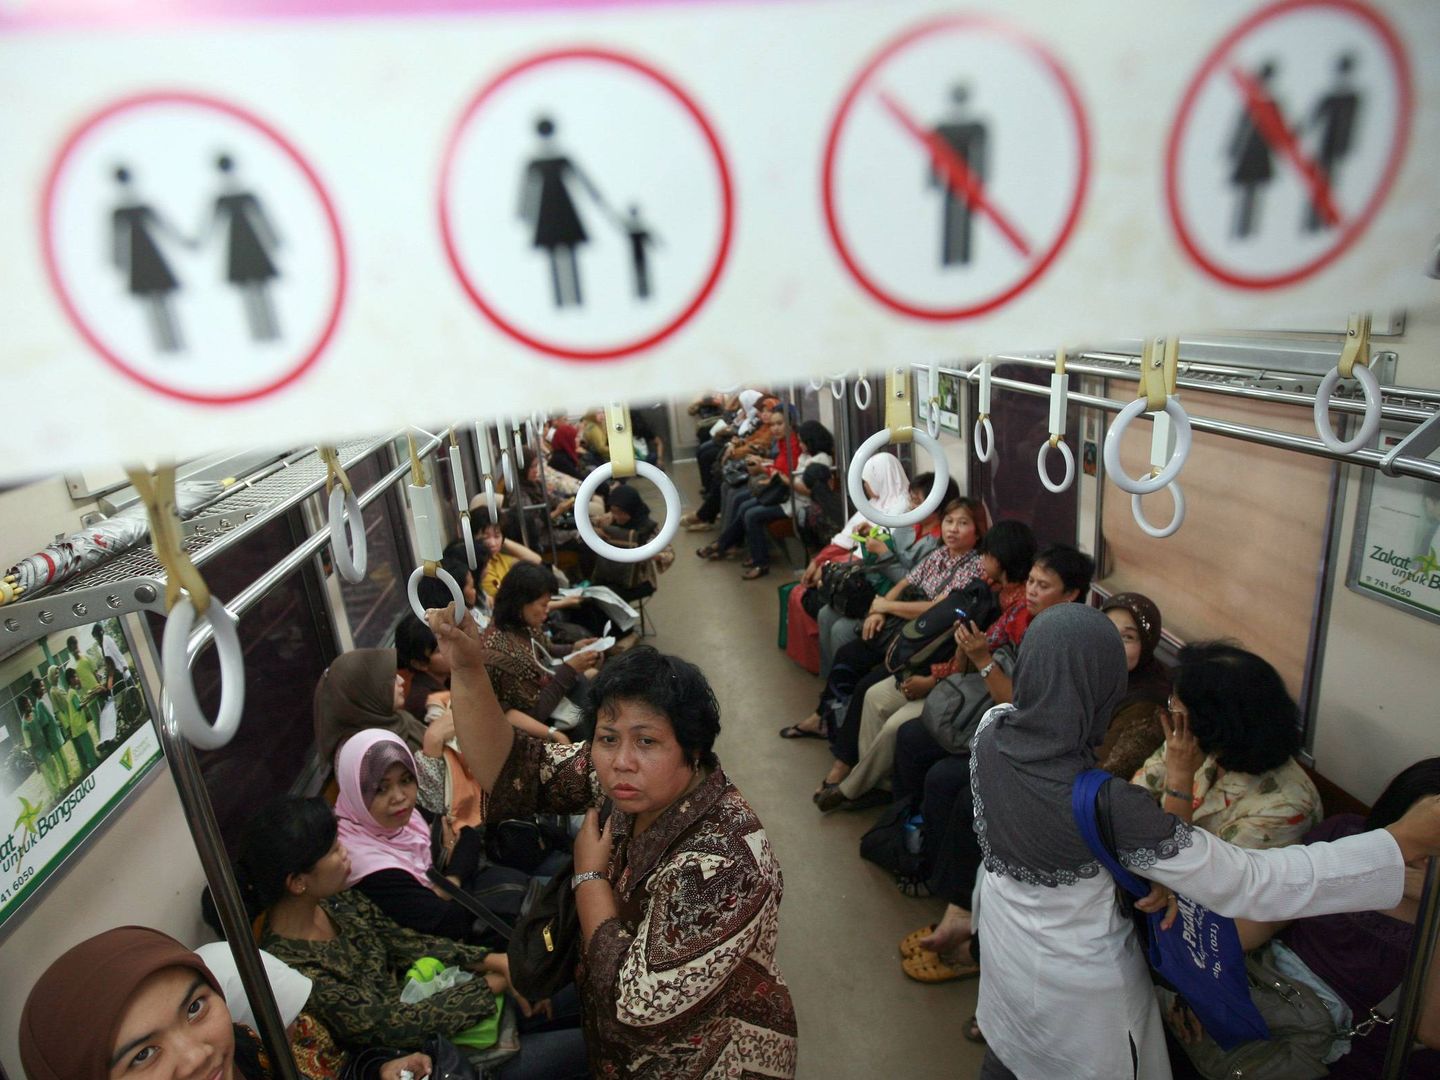 Varios países han añadido a sus trenes vagones exclusivos para mujeres. (EFE)